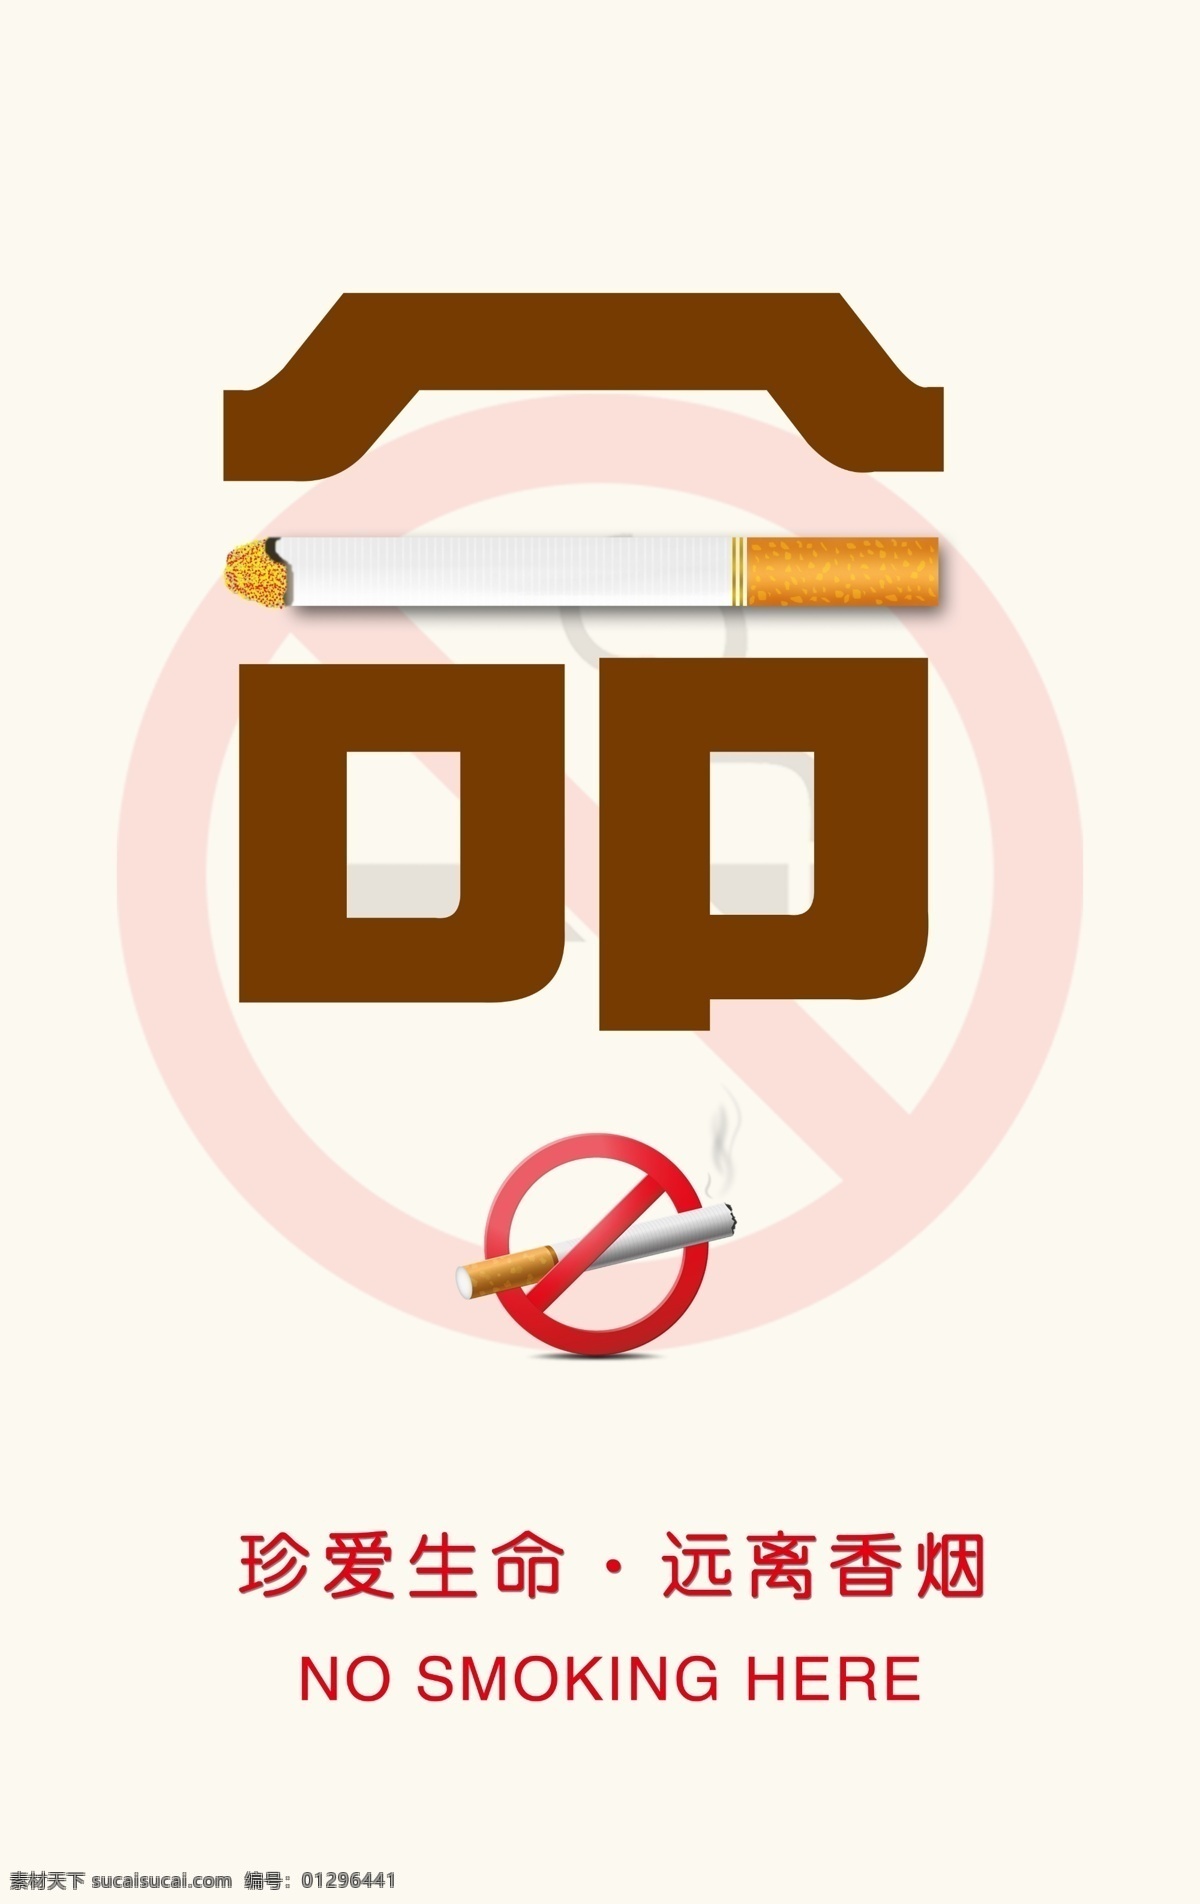 香烟 珍爱生命 远离香烟 公益 命 禁止 吸烟 公益类